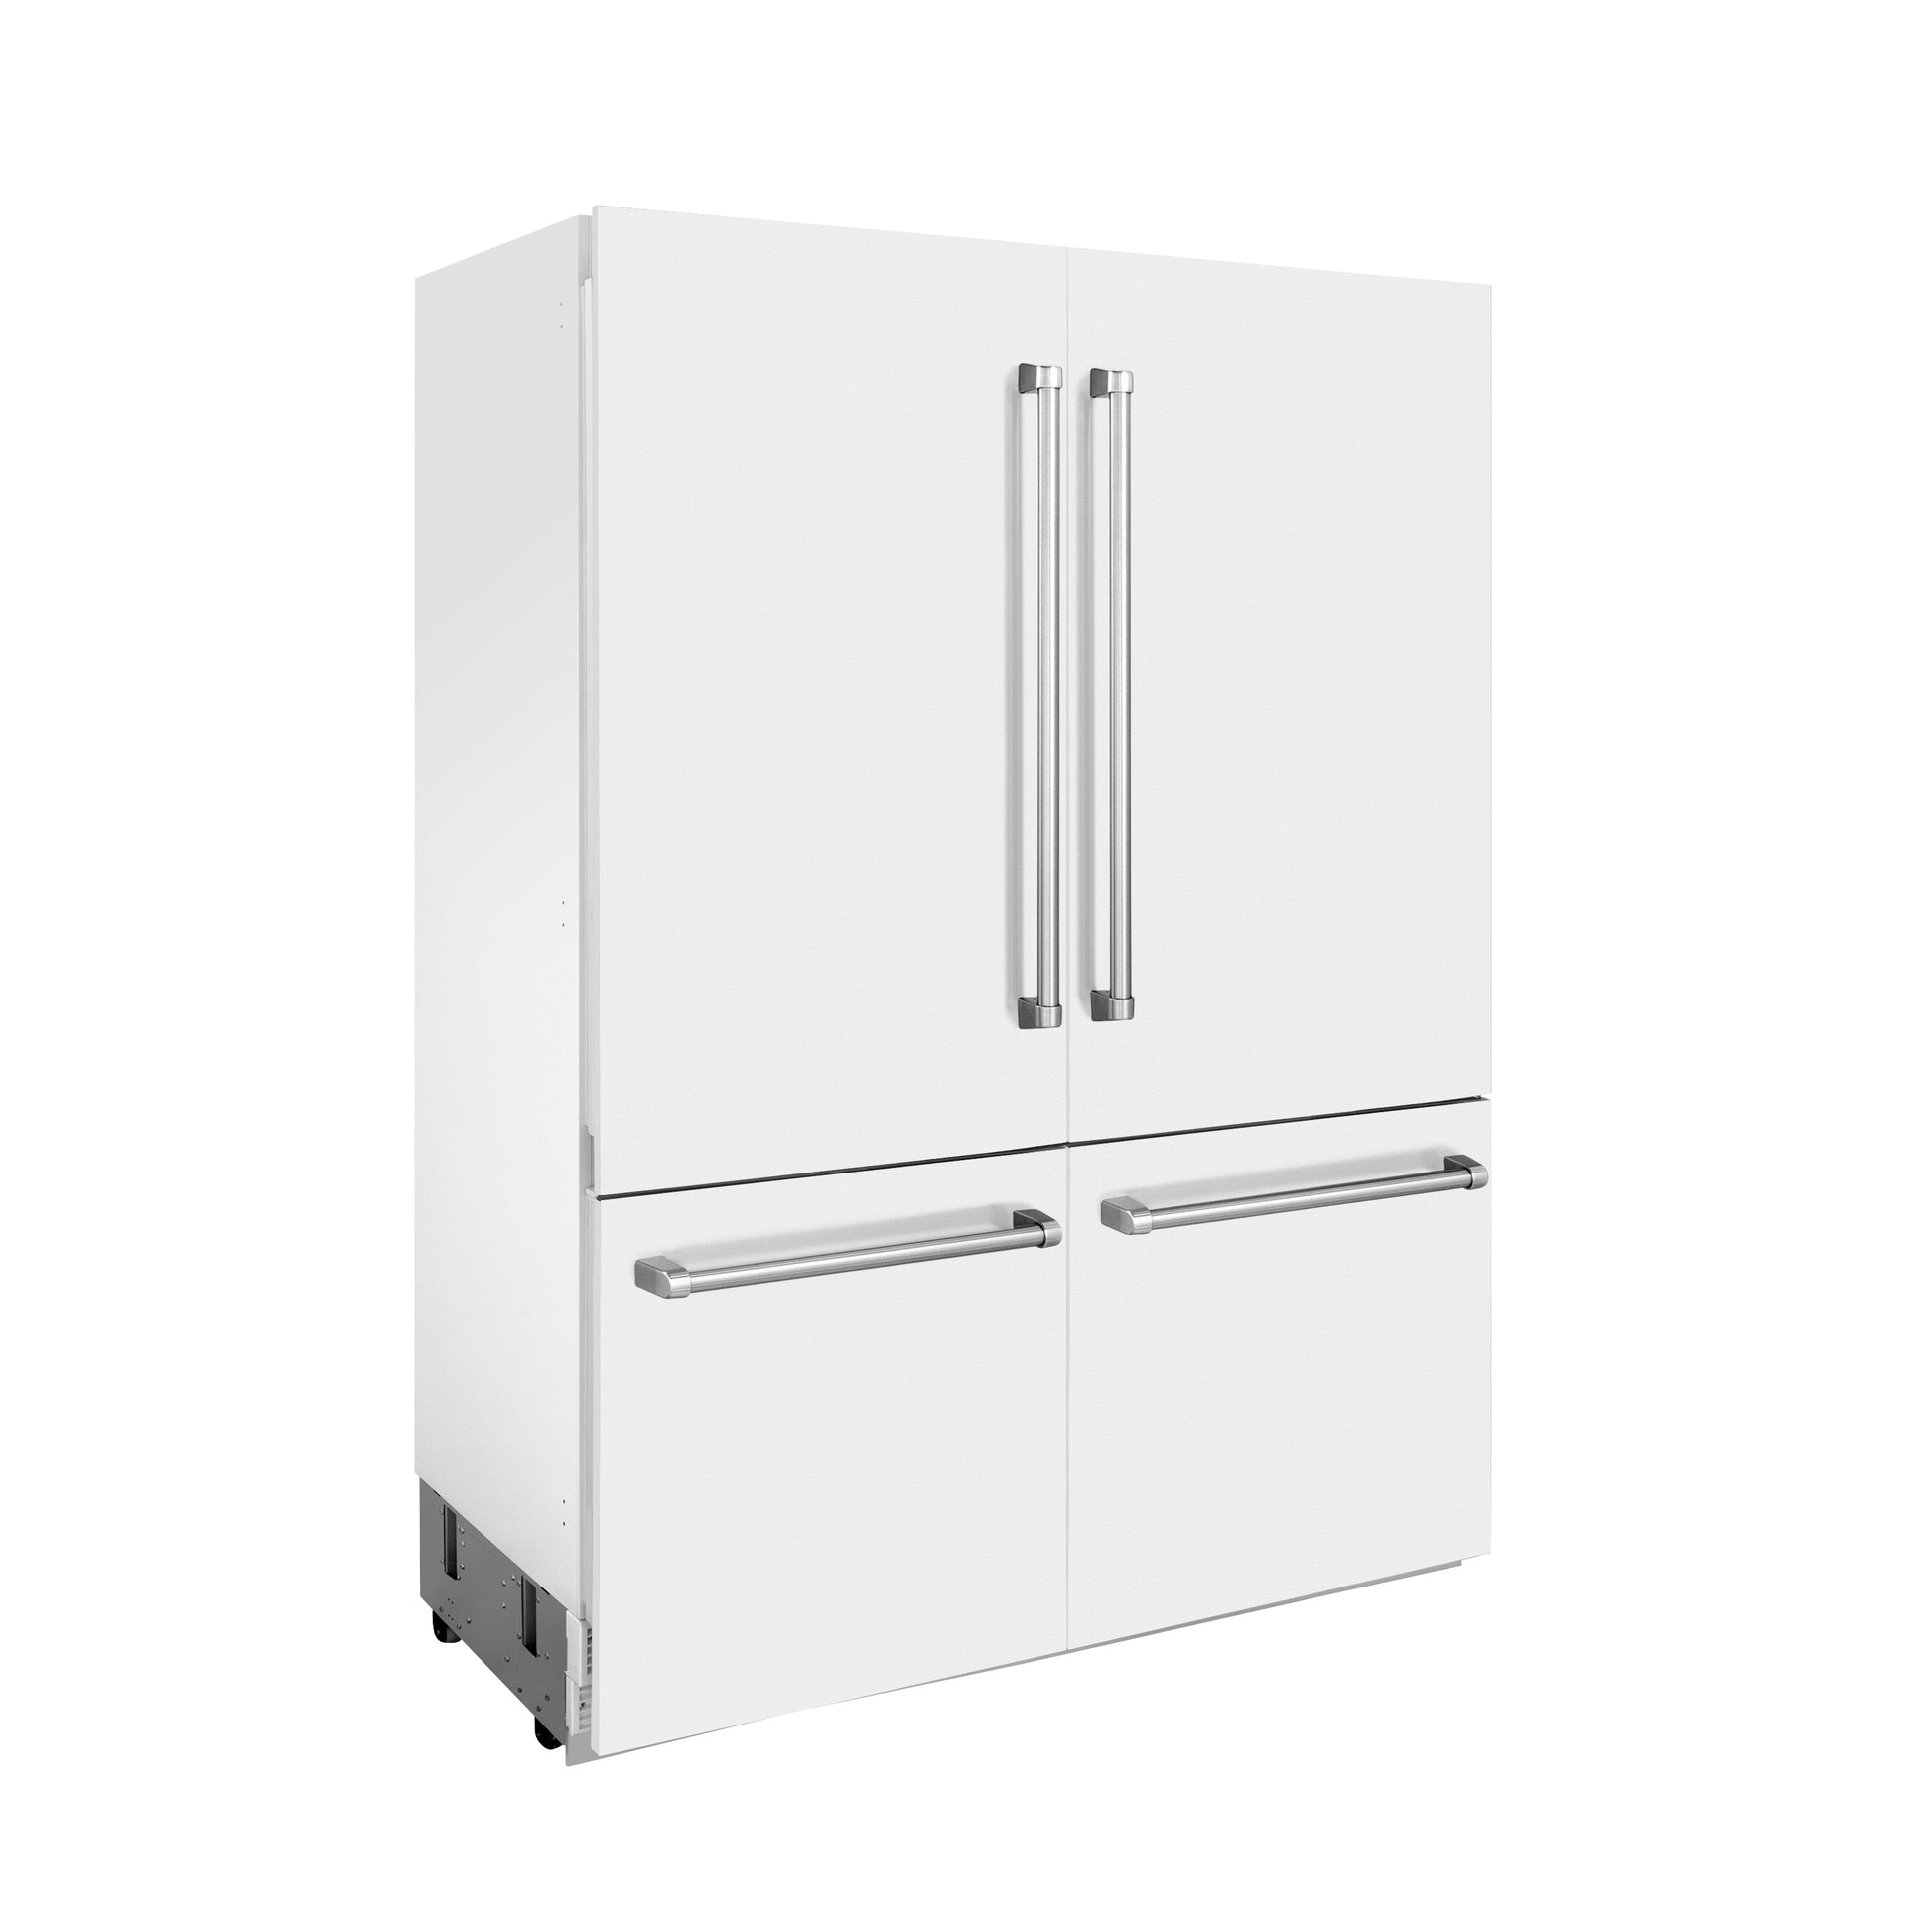 ZLINE 60 in. 32.2 cu. ft. Built-in 4-Door French Door Refrigerator with Internal Water and Ice Dispenser in White Matte (RBIV-WM-60) side, doors closed.